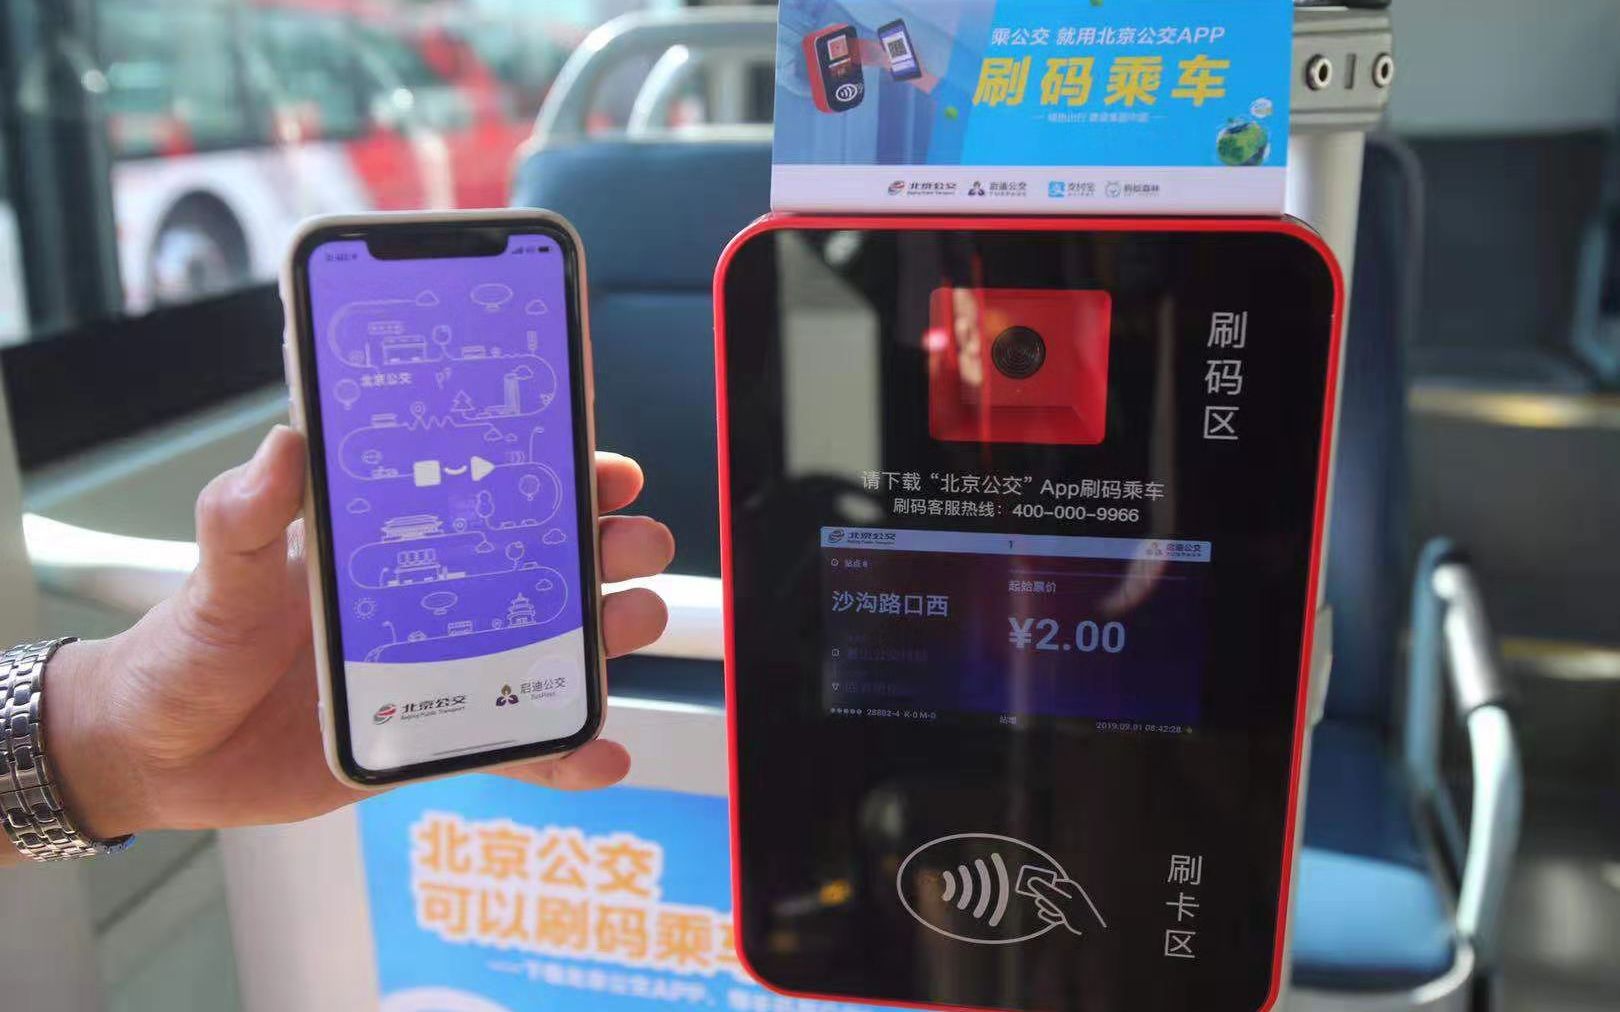 В Пекине введен проезд на автобусах через сканирование QR-кодов